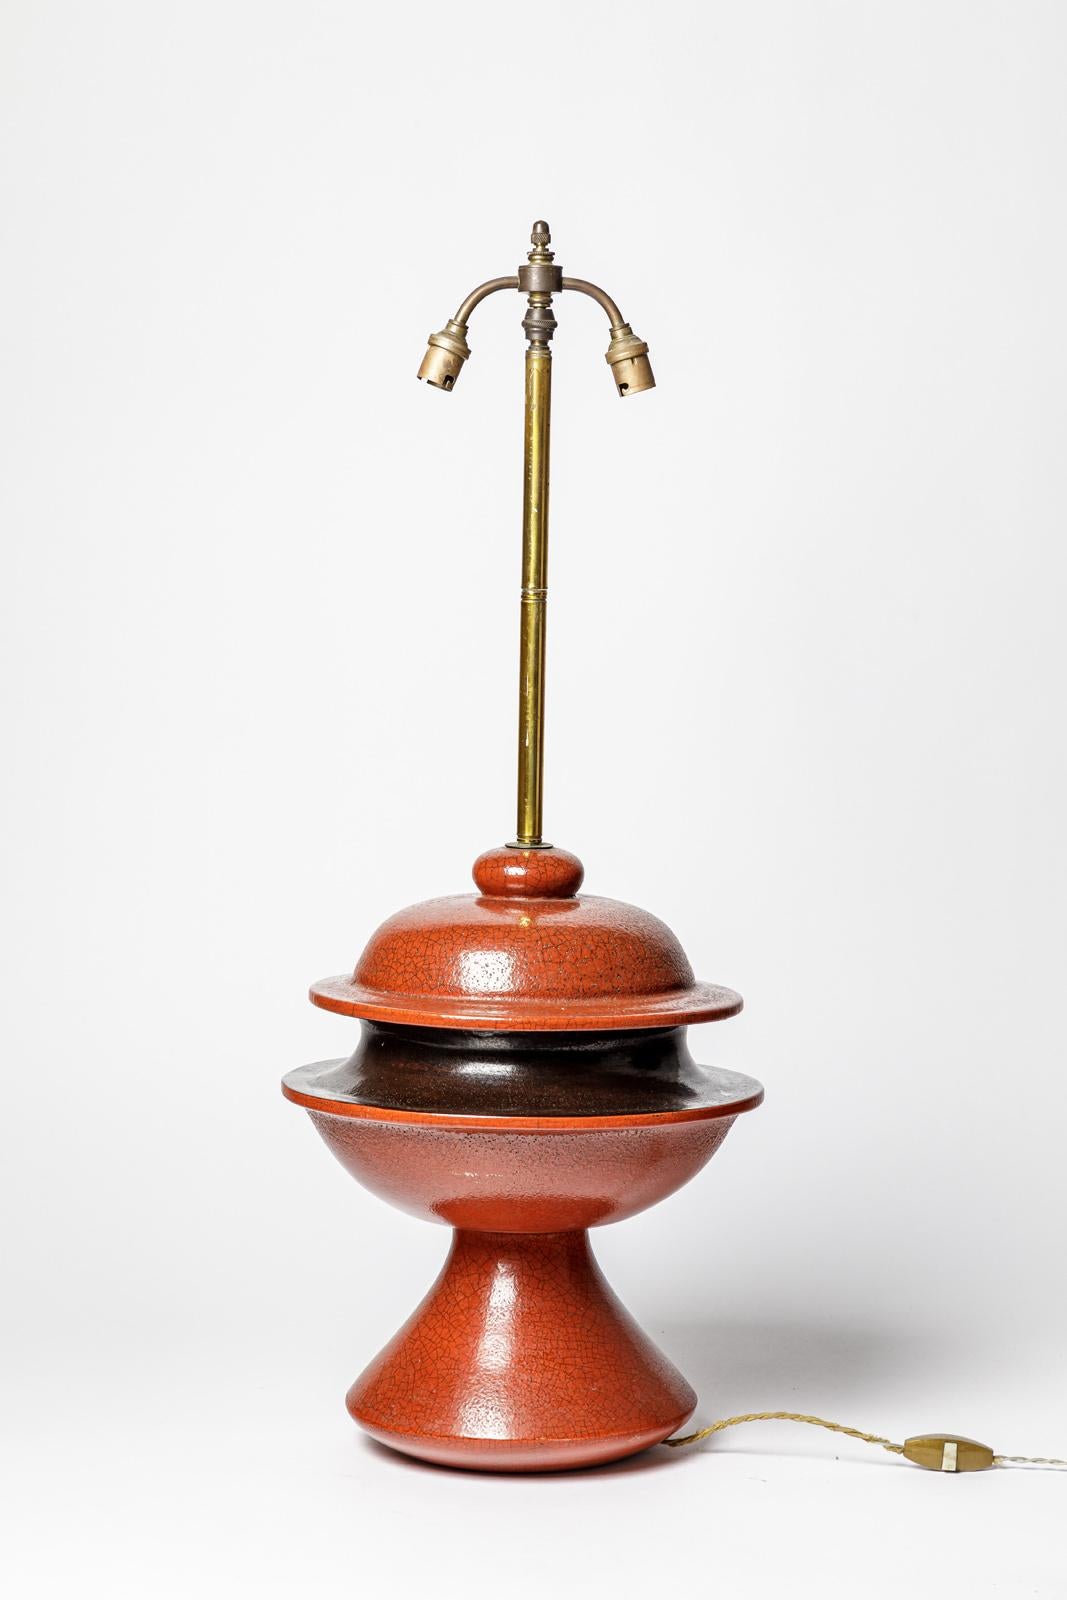 Lampe de table française

Grande lampe à poser en céramique rouge et noire design du 20e siècle

original en parfait état

réalisé vers 1970

Je peux modifier le système électrique pour abaisser la barre en laiton pour le nouveau système